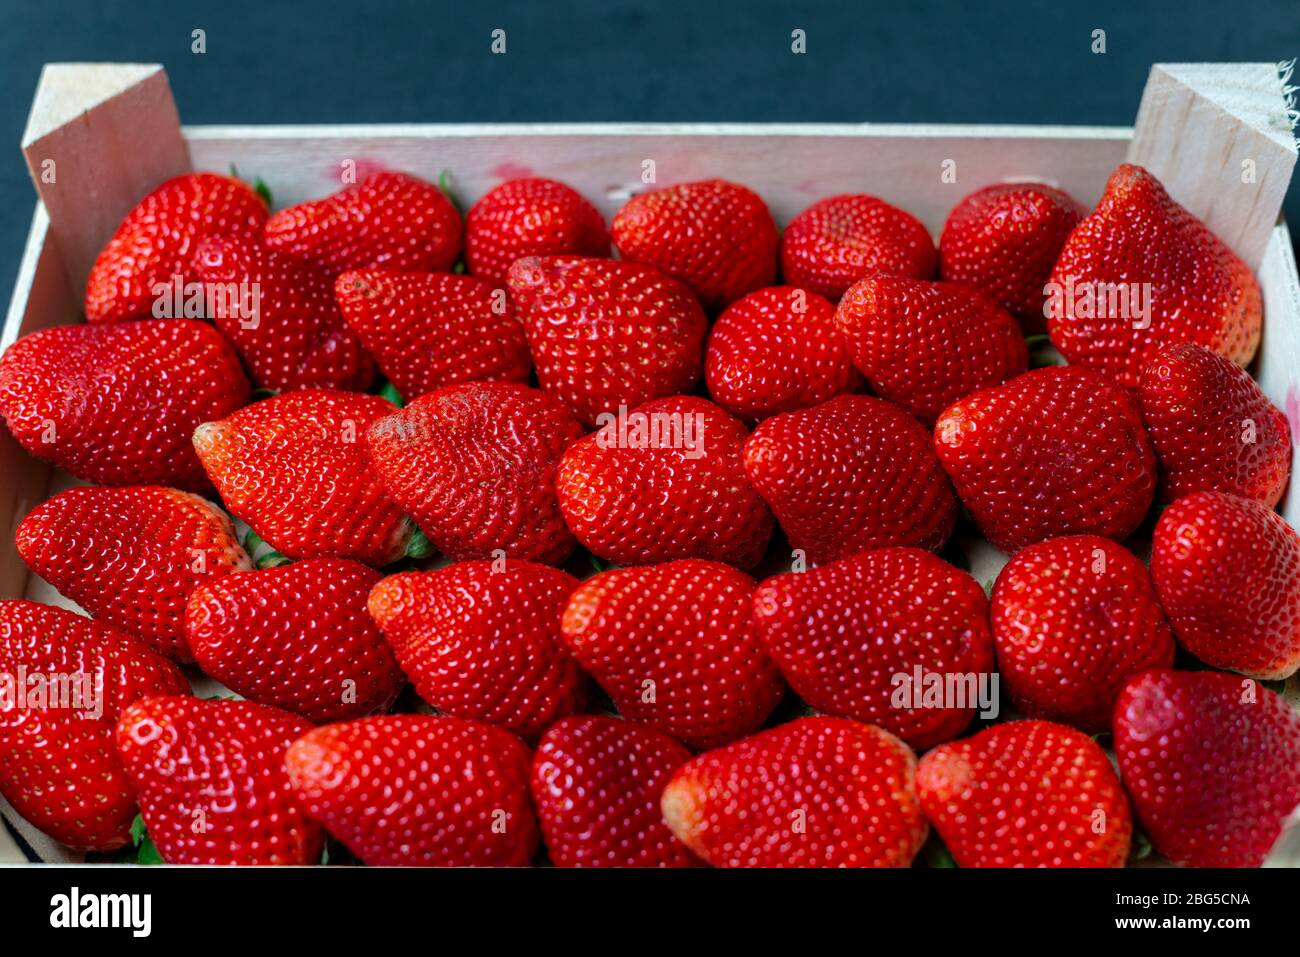 Les fraises du marché hebdomadaire près de ma ville, elles semblent super Banque D'Images